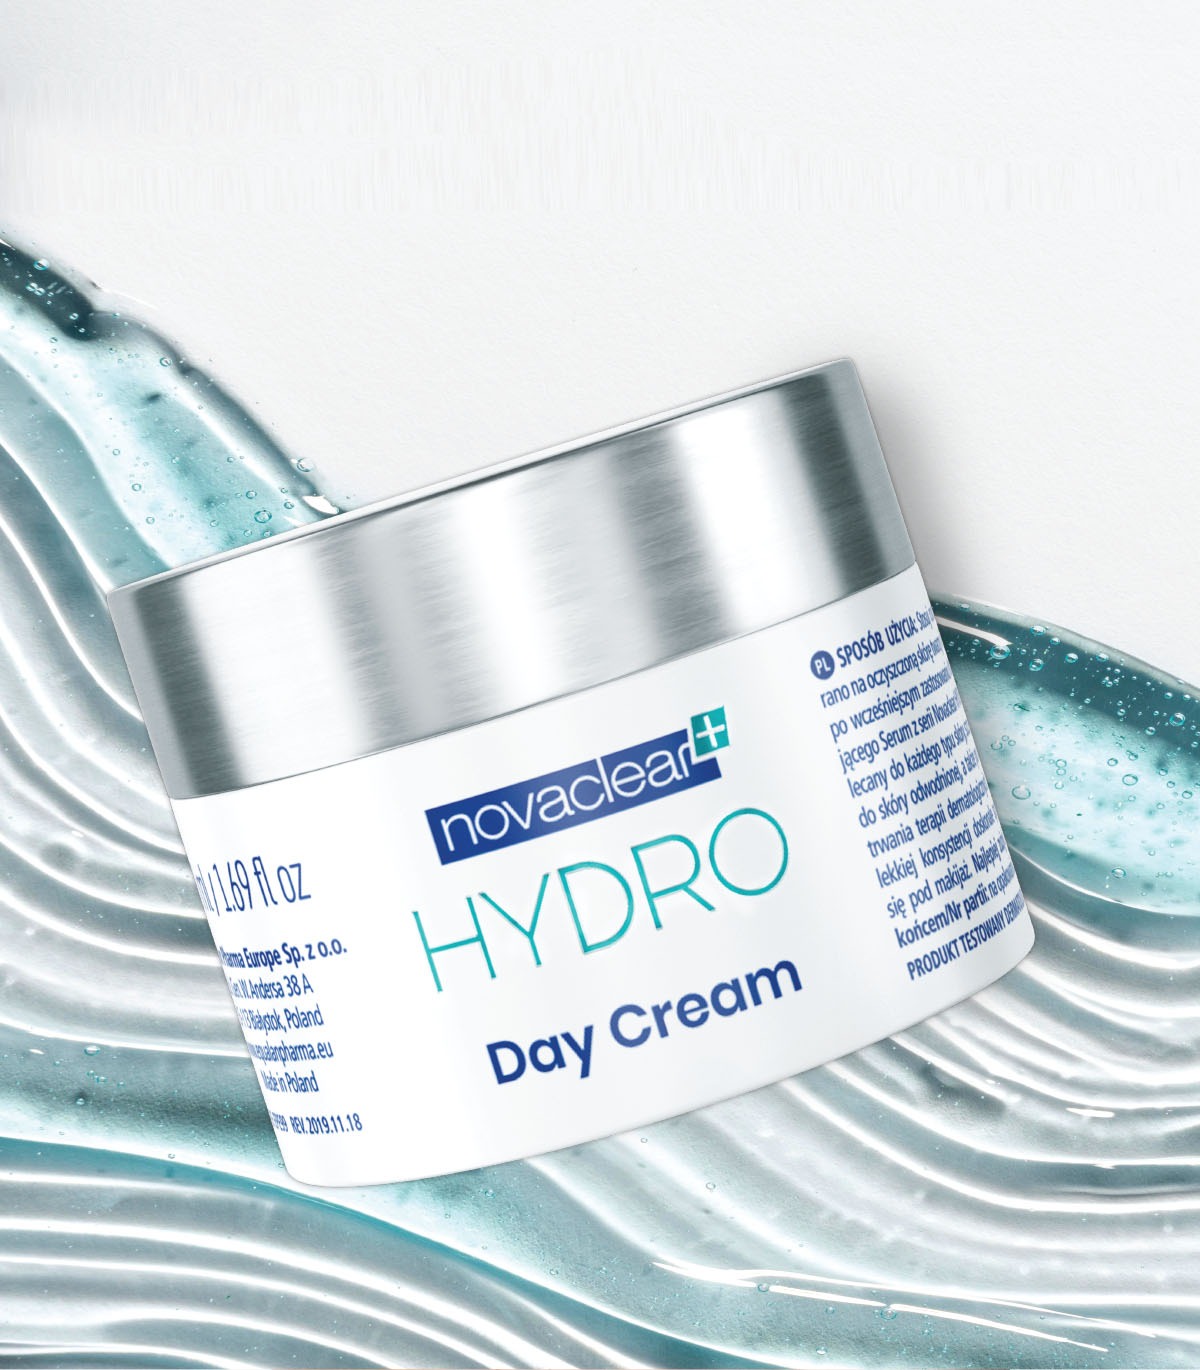 Hydro day cream by novaclear